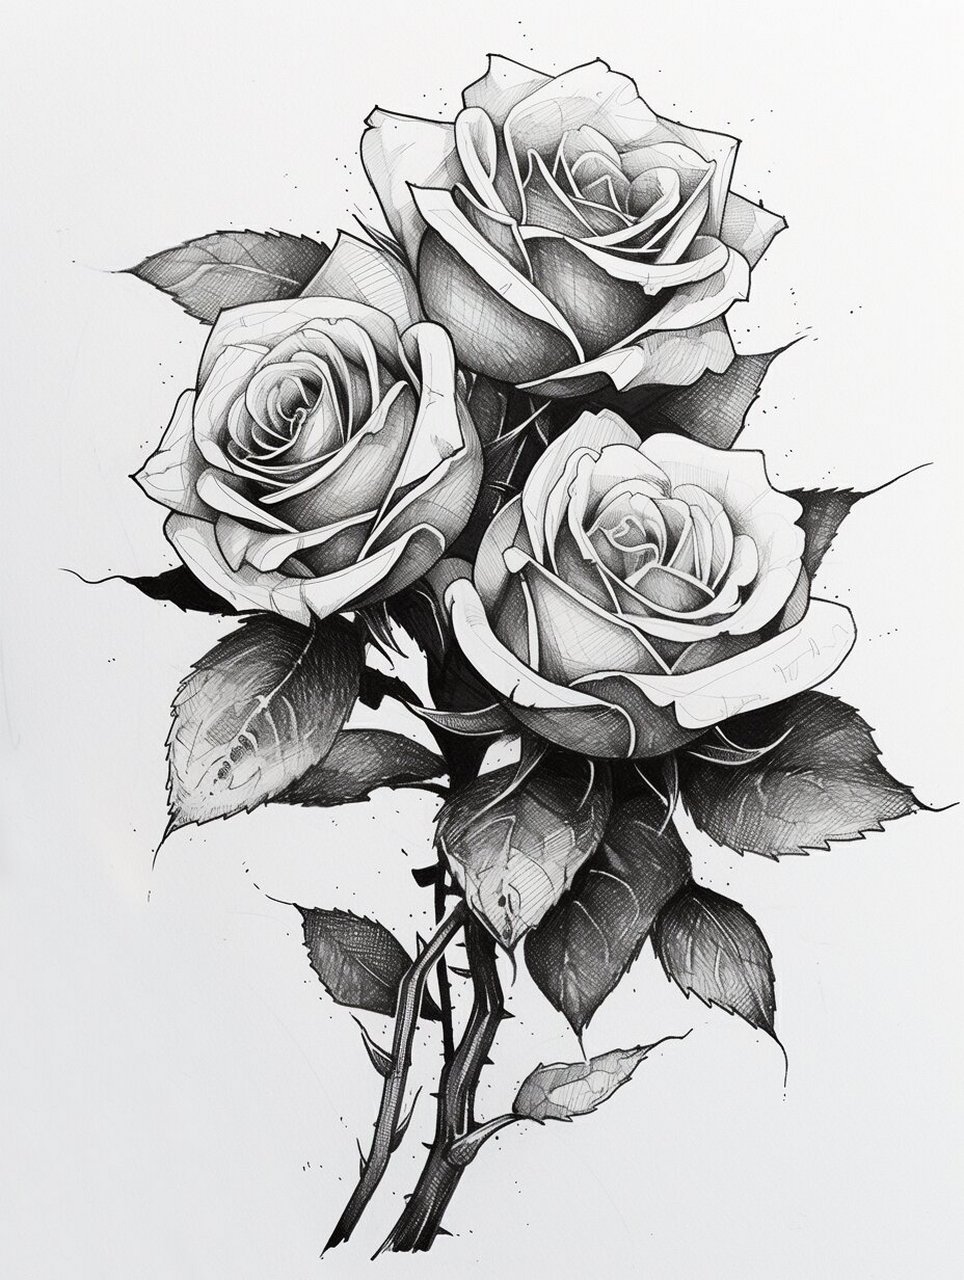 玫瑰花纹身手稿黑白图片